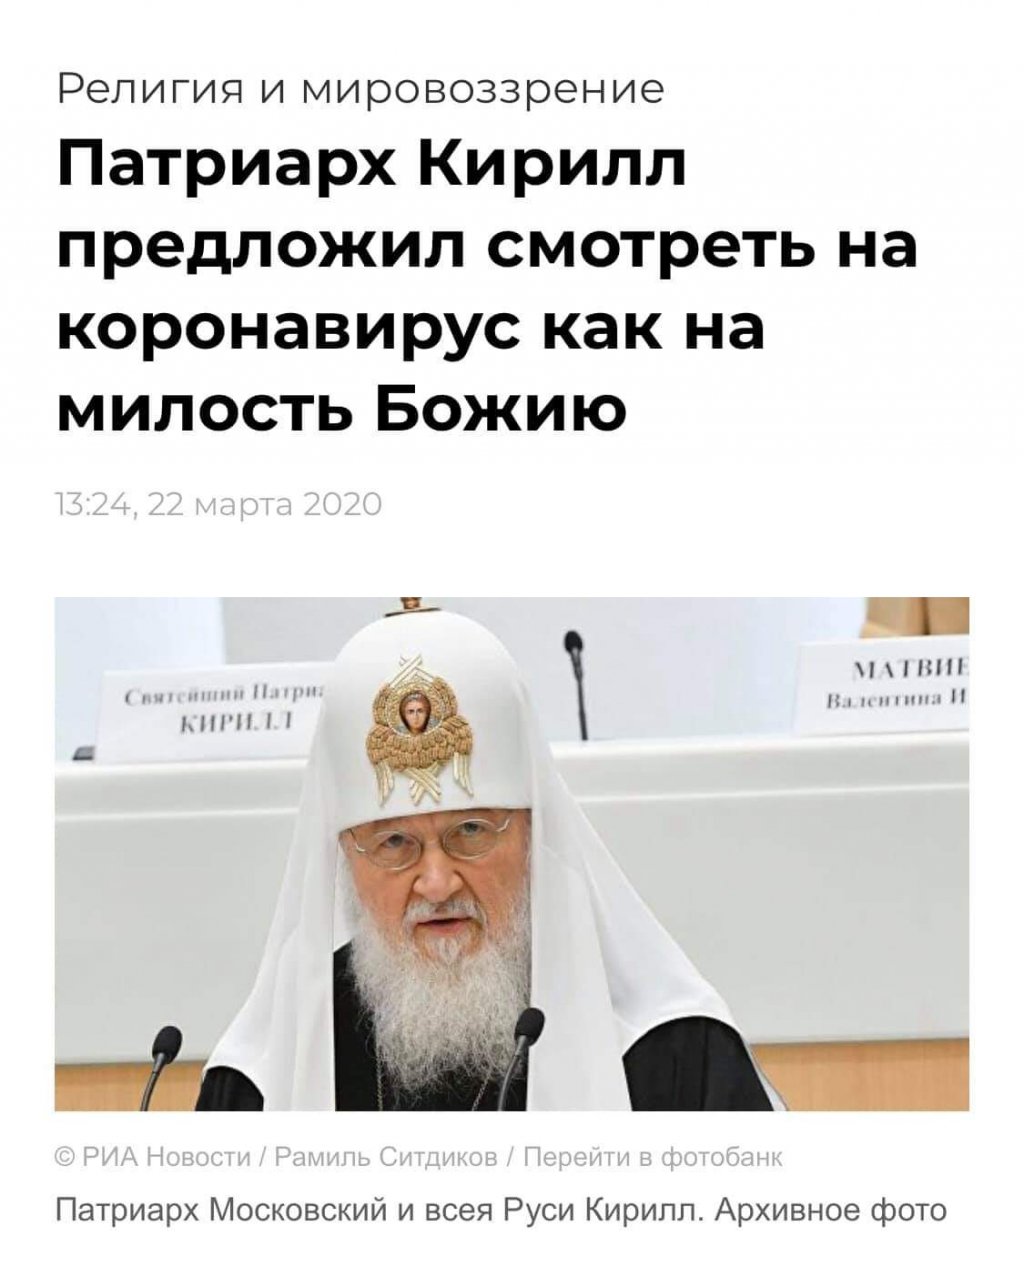 Имущество Патриарха Кирилла Гундяева